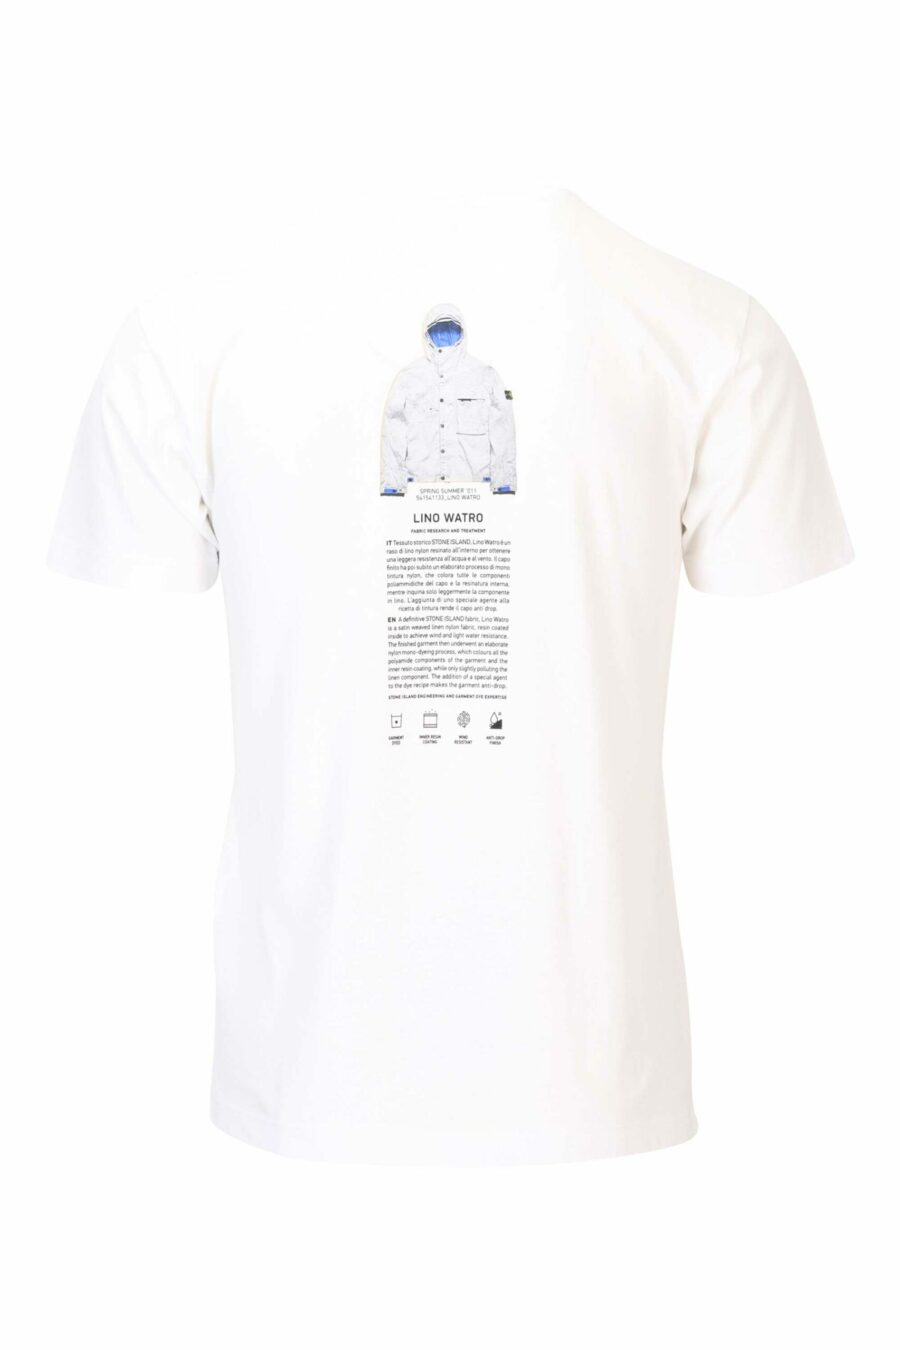 Weißes T-Shirt mit zentriertem Logo und Druck auf dem Rücken - 8052572755866 2 skaliert